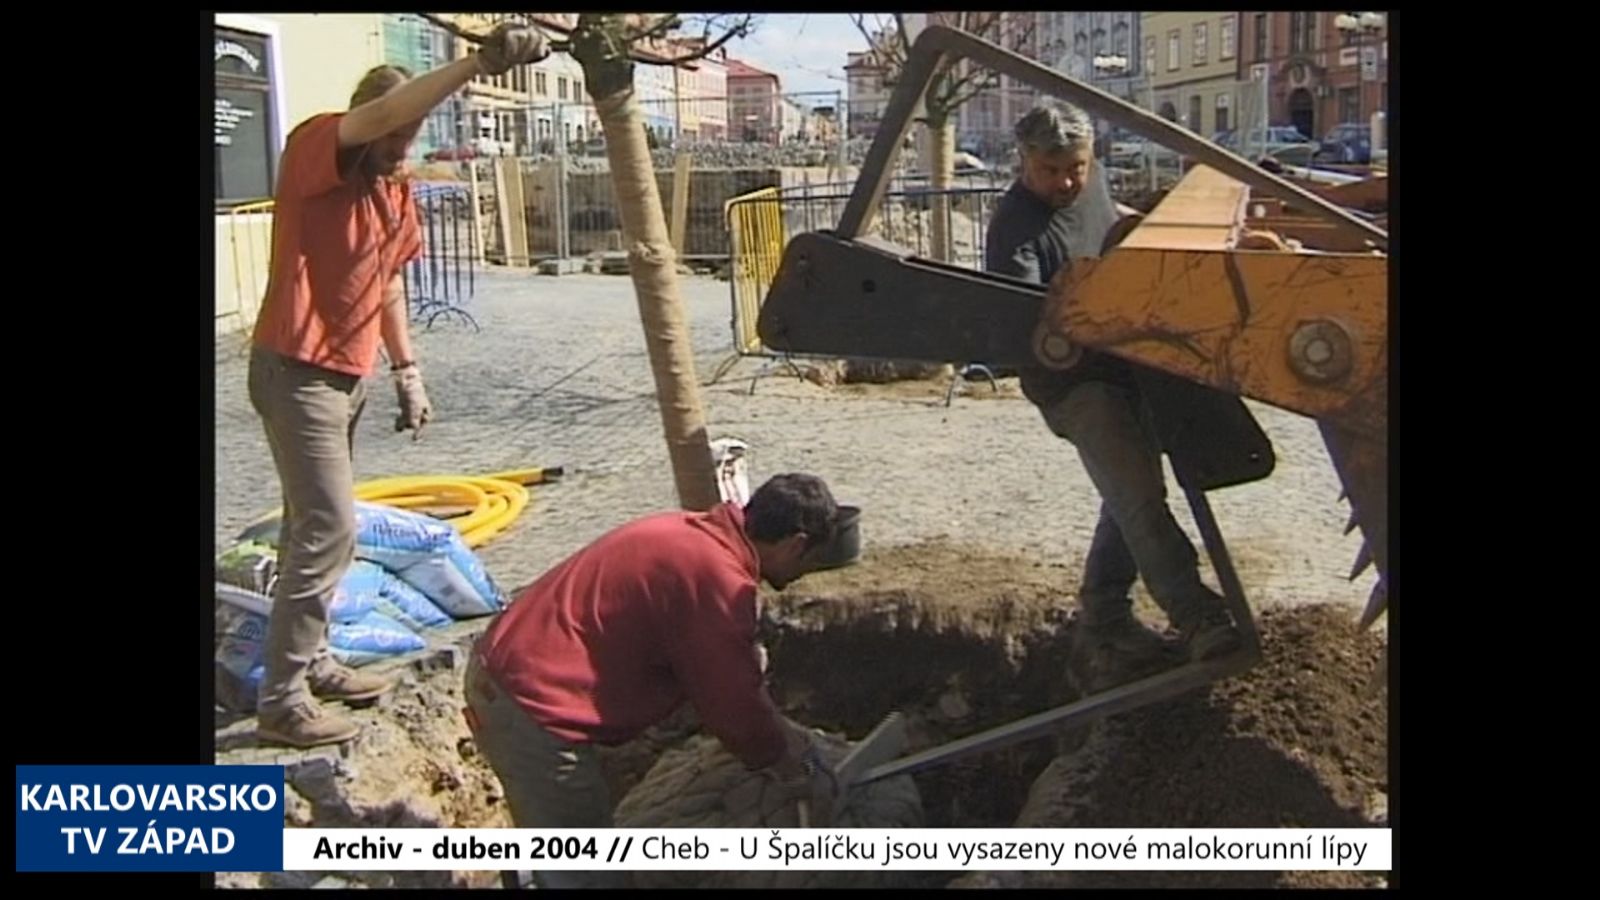 2004 – Cheb: U Špalíčku jsou vysazeny nové malokorunní lípy (TV Západ)